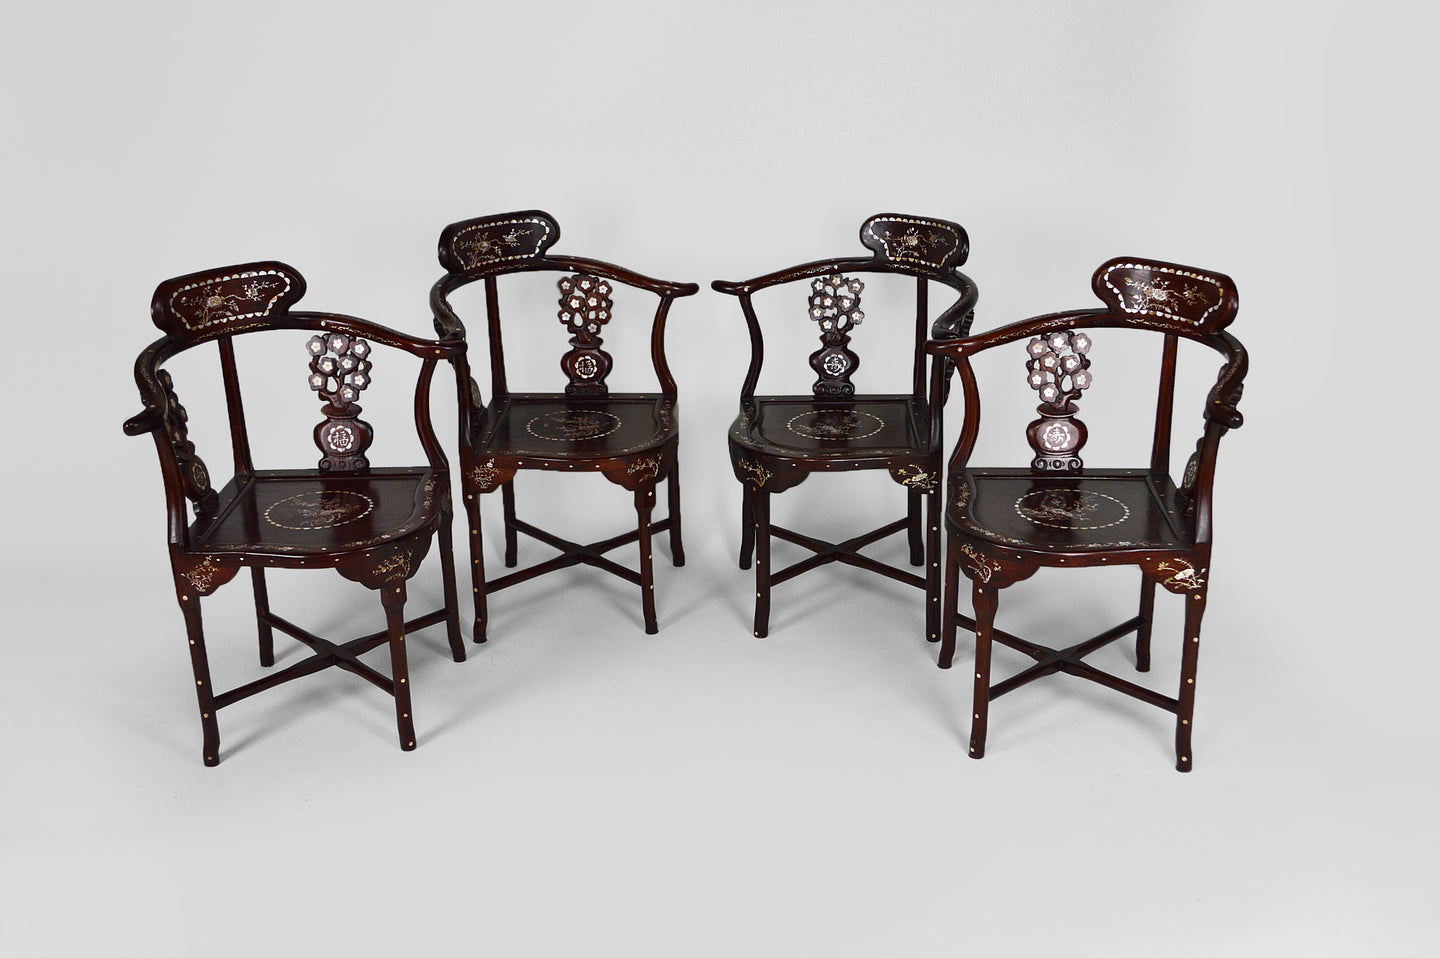 4 fauteuils asiatiques en bois sculpté et marquetés de nacre, début XXe